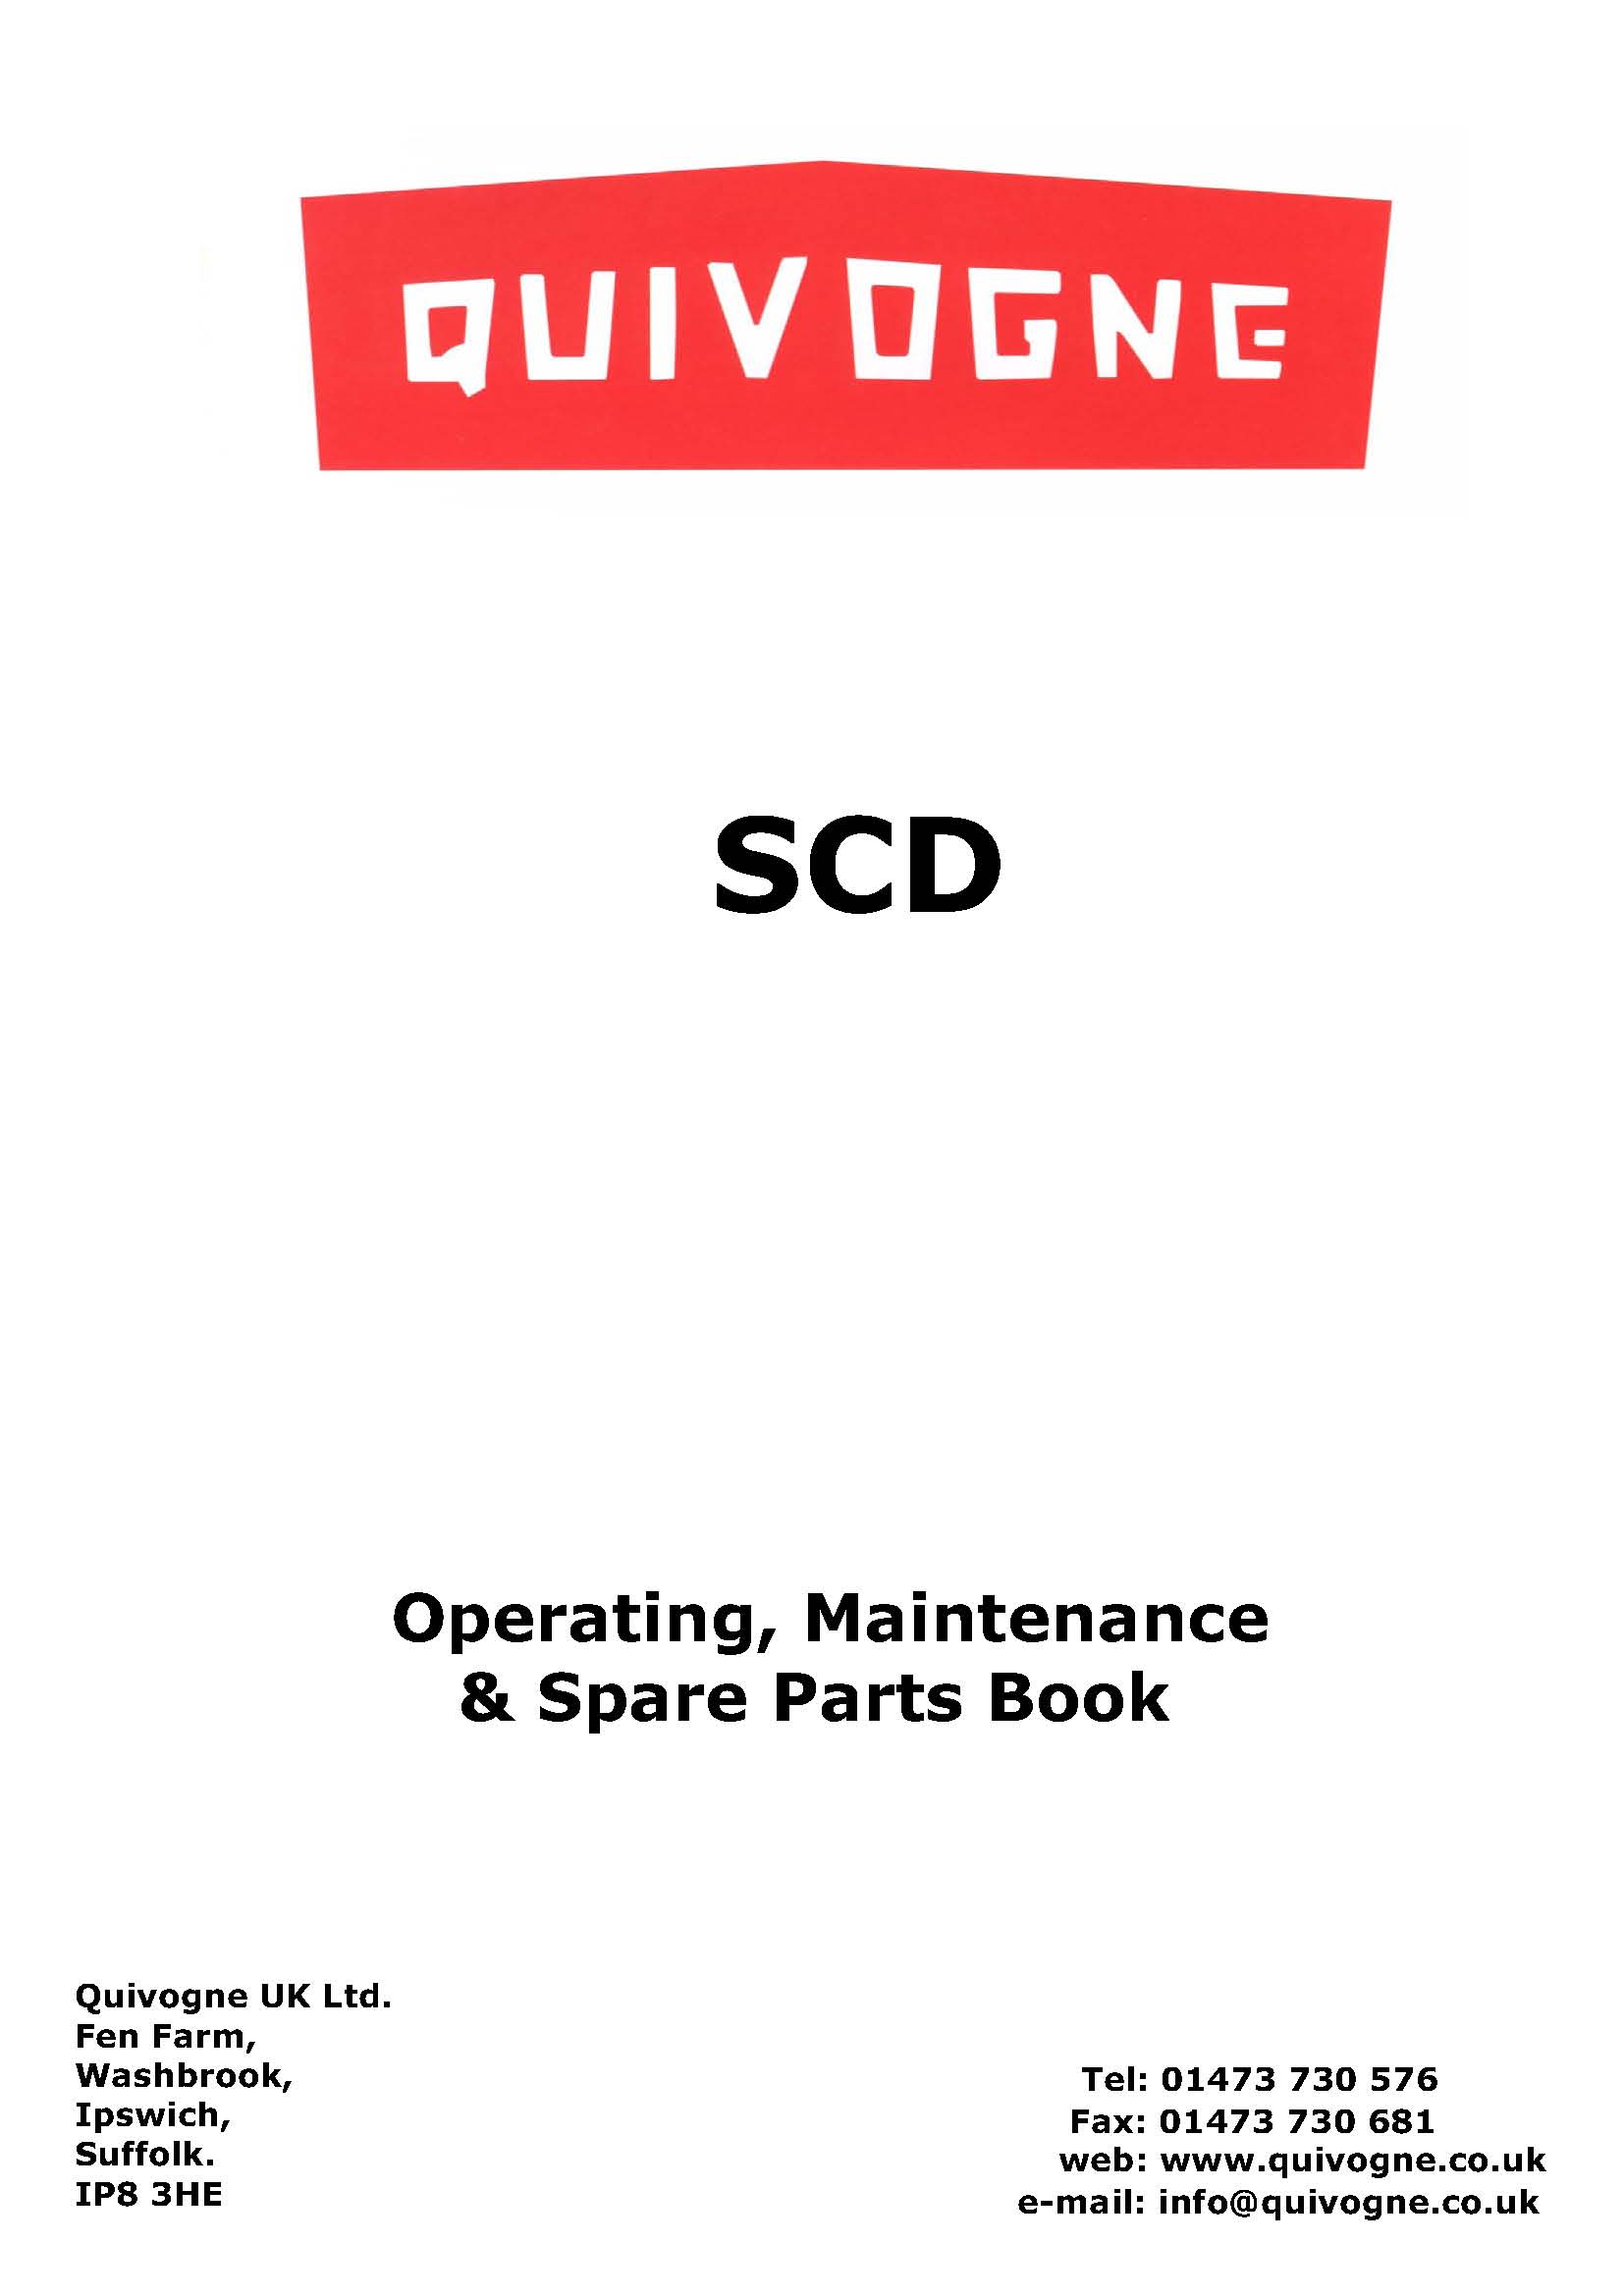 SCD complete book